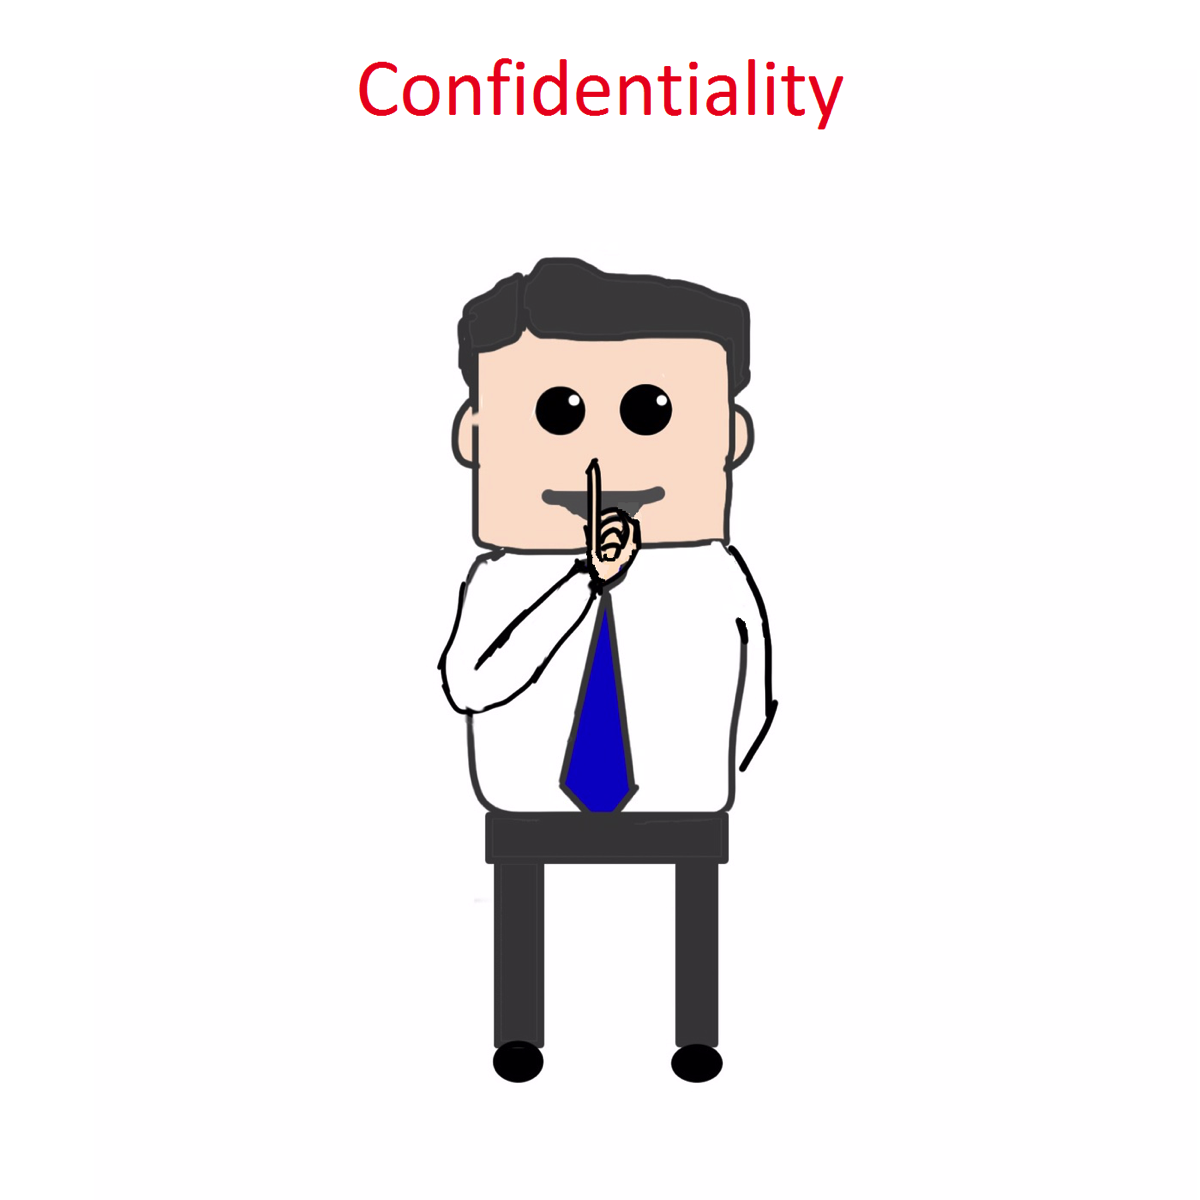 Confidentiality